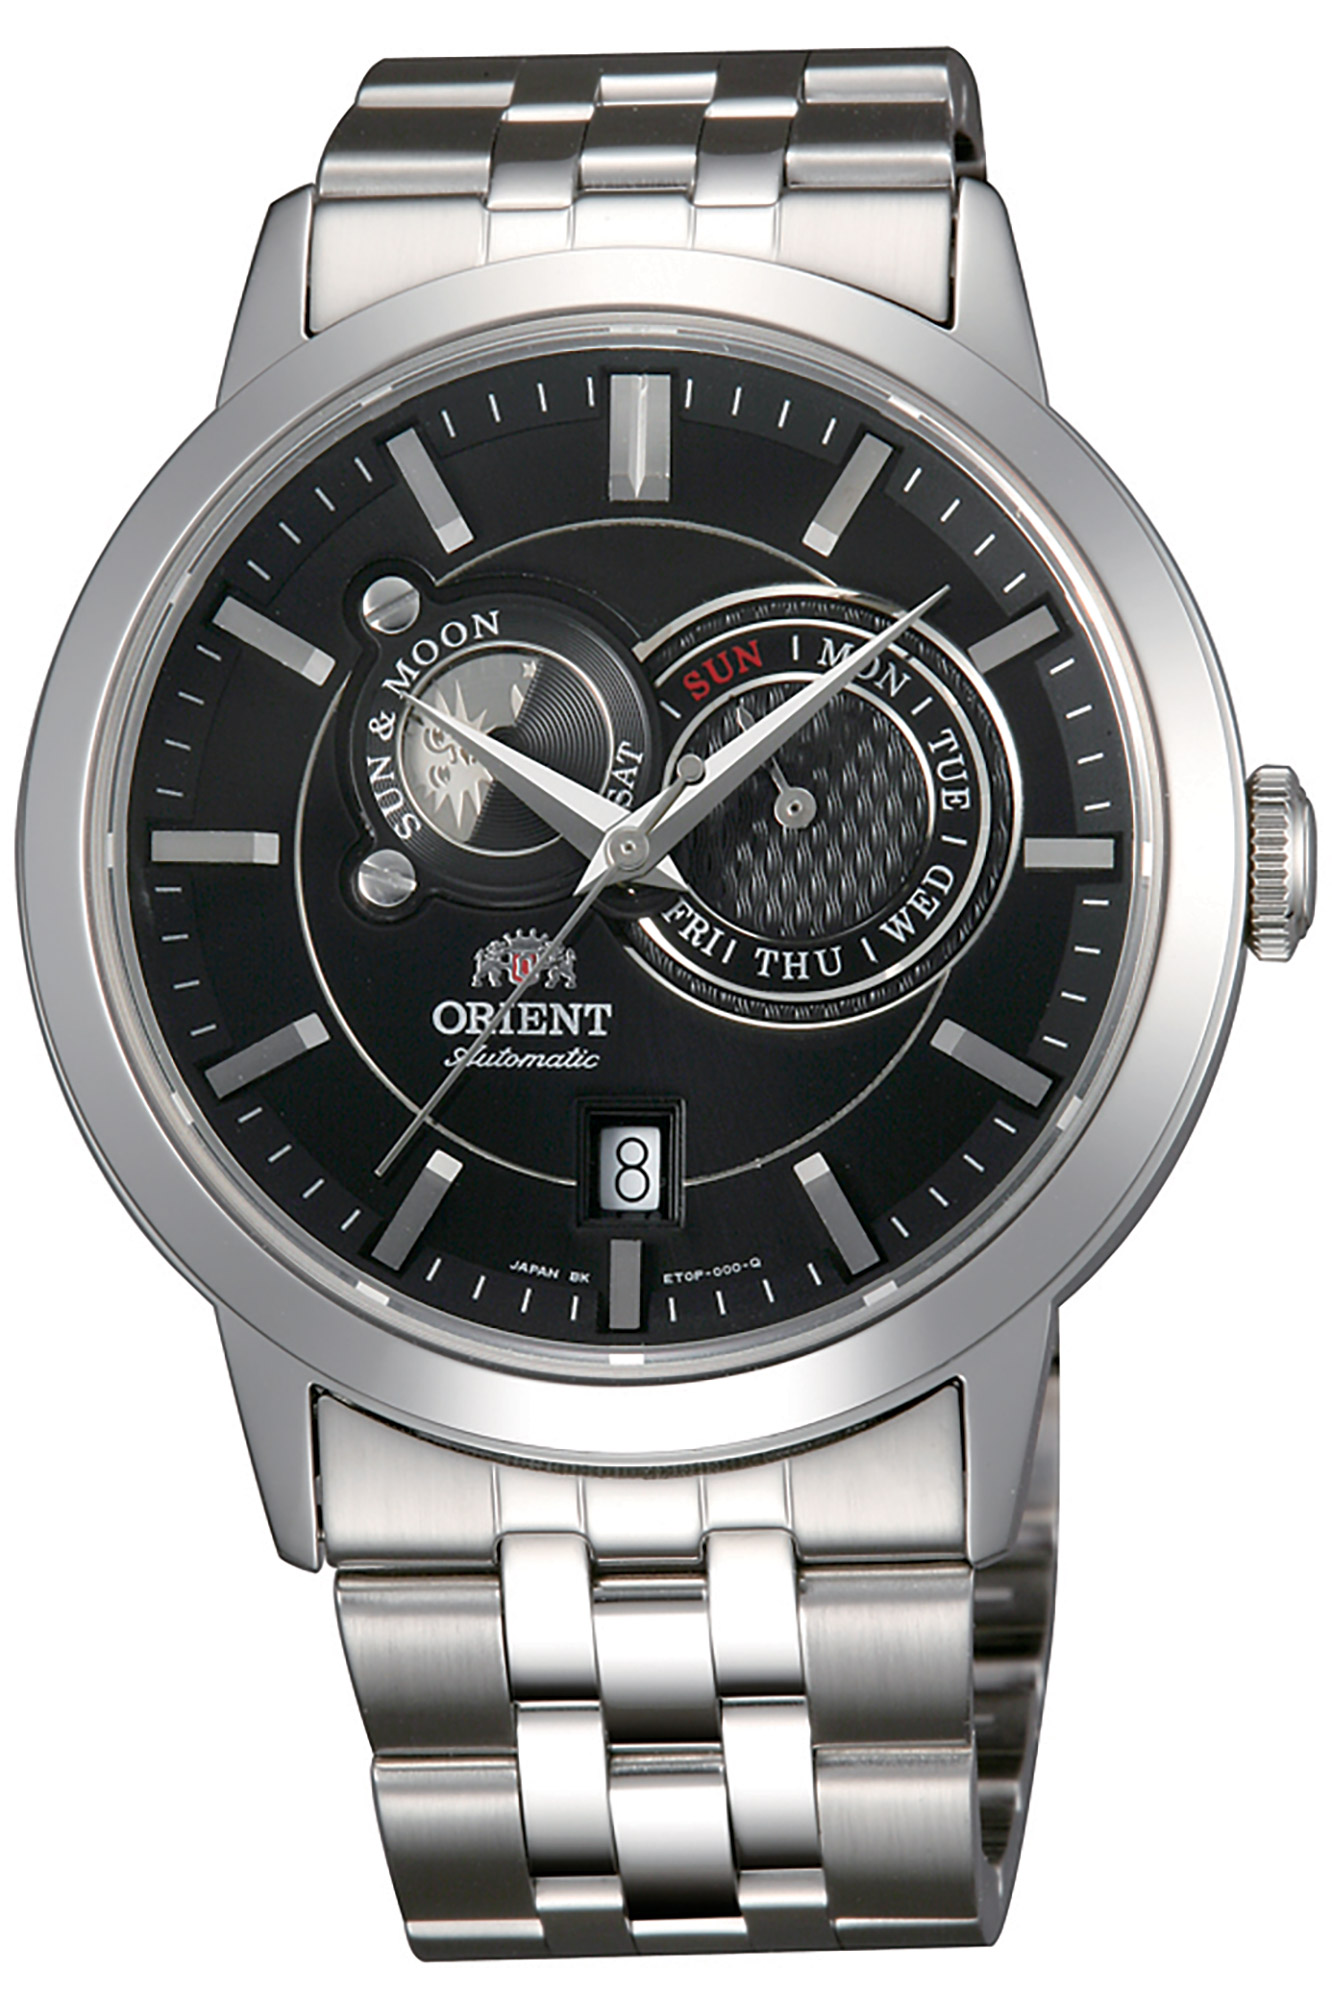 Купить часы ориент механика. Orient et0p002b. Orient Automatic fet0p002b. Часы Orient et0p003b. Orient ra-ar0003l.